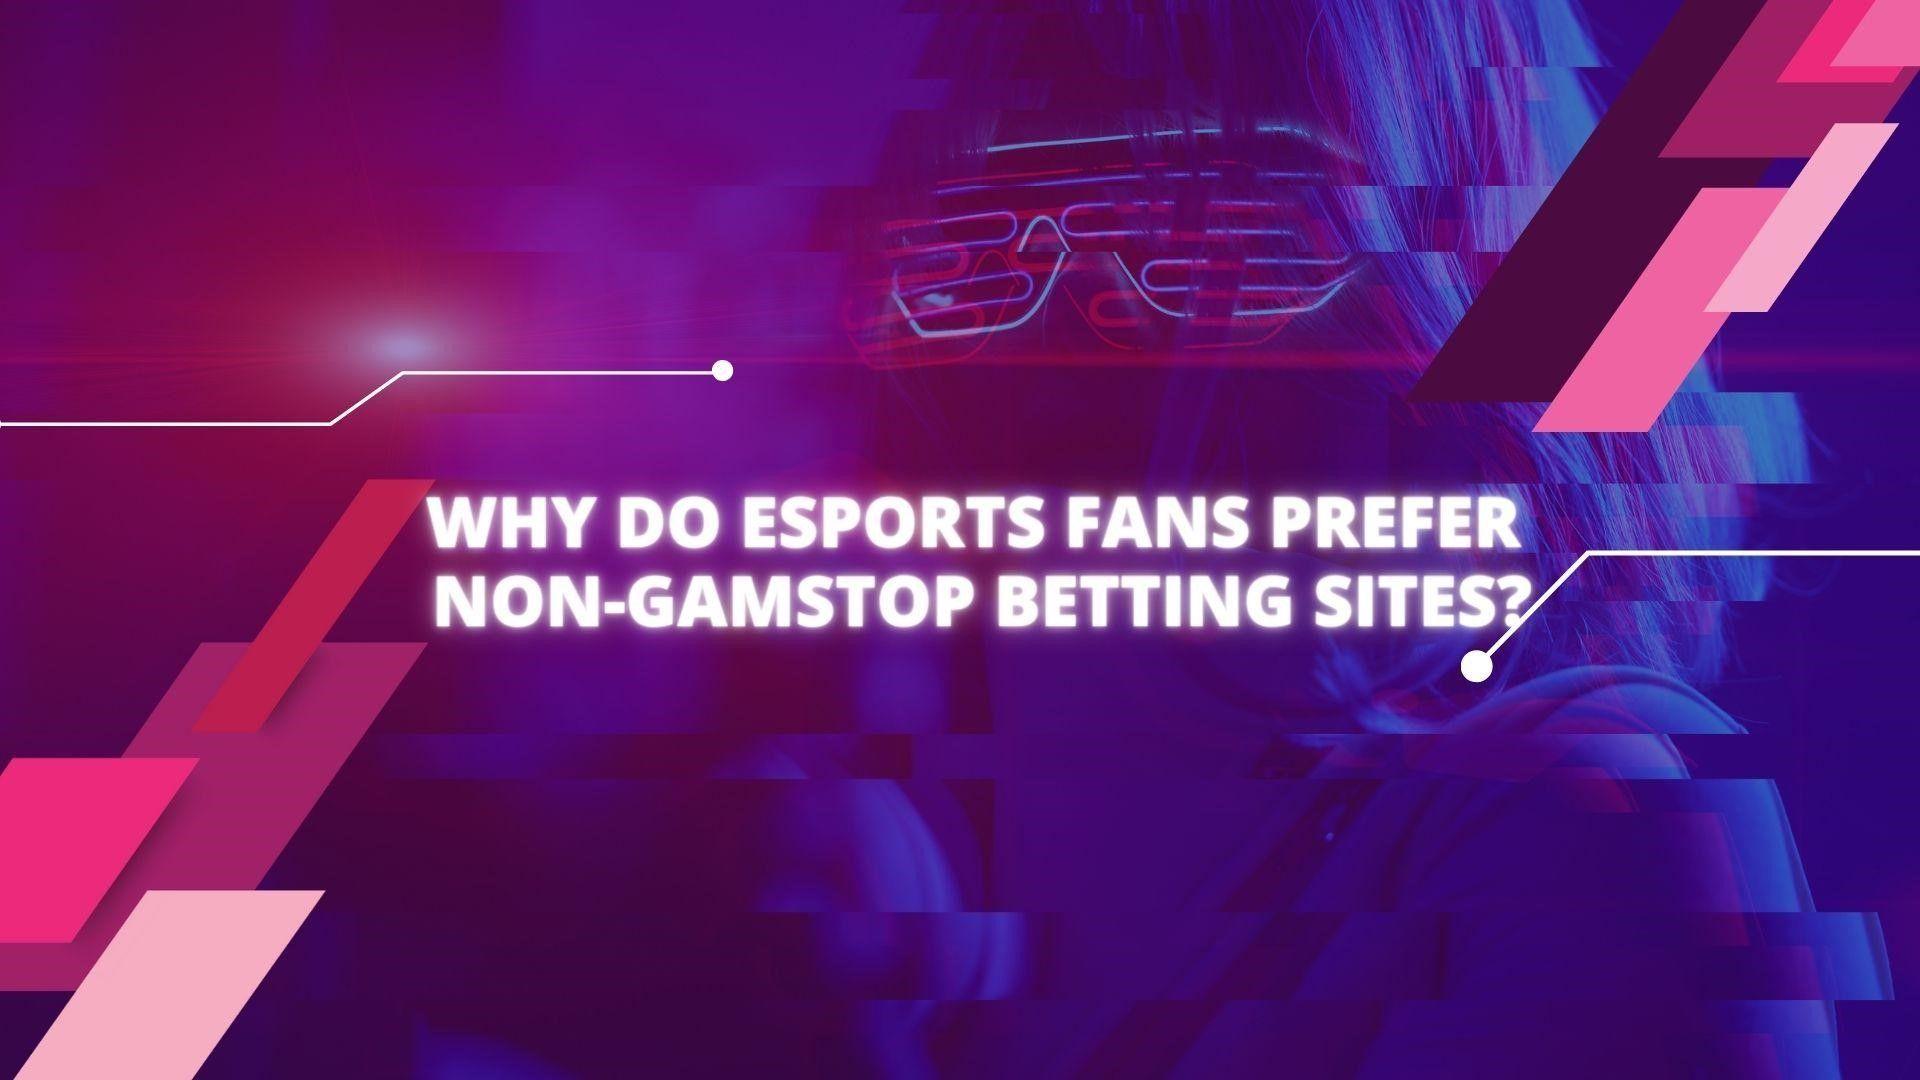 Warum bevorzugen Esports-Fans Wettseiten ohne GamStop?